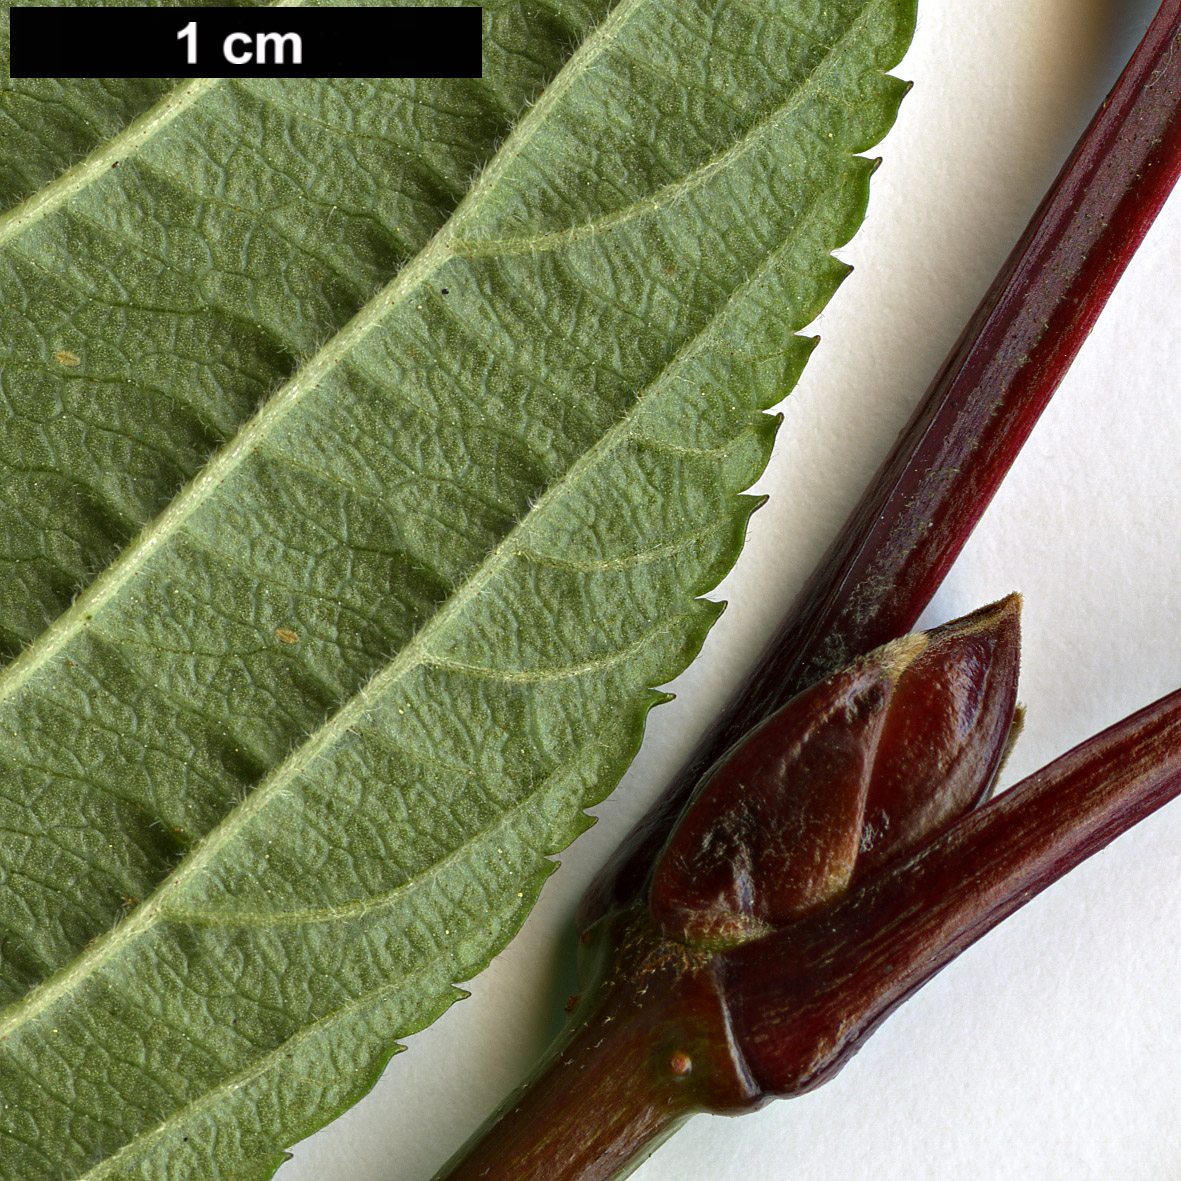 High resolution image: Family: Adoxaceae - Genus: Viburnum - Taxon: grandiflorum - SpeciesSub: f. grandiflorum